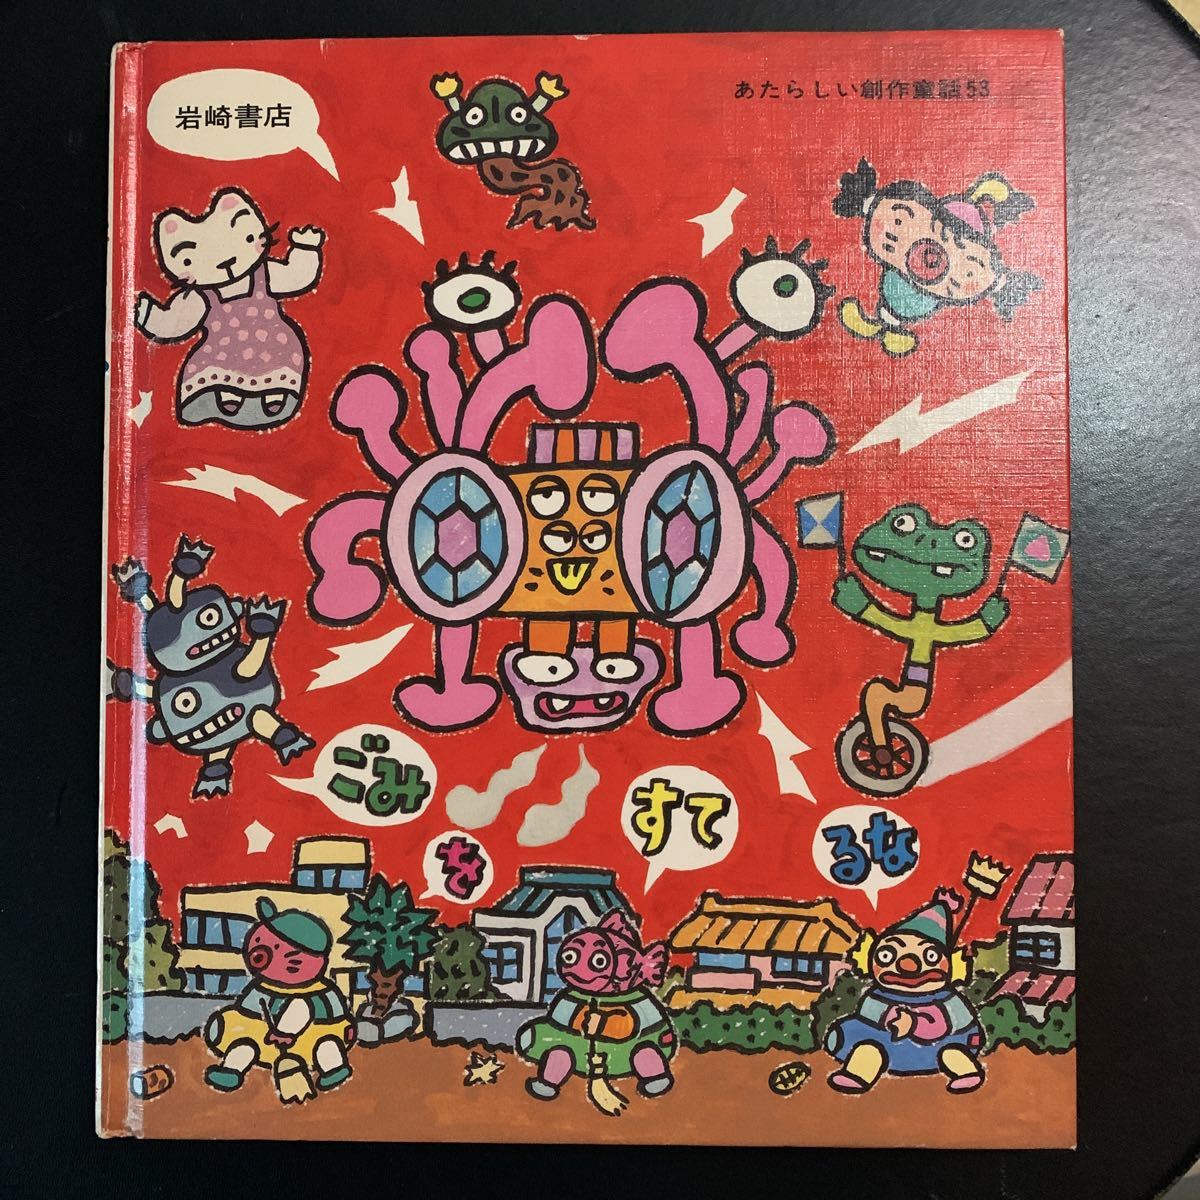 ぼくへそまでまんが矢玉四郎岩崎書店第1刷発行あたらしい創作童話日本代购 买对网